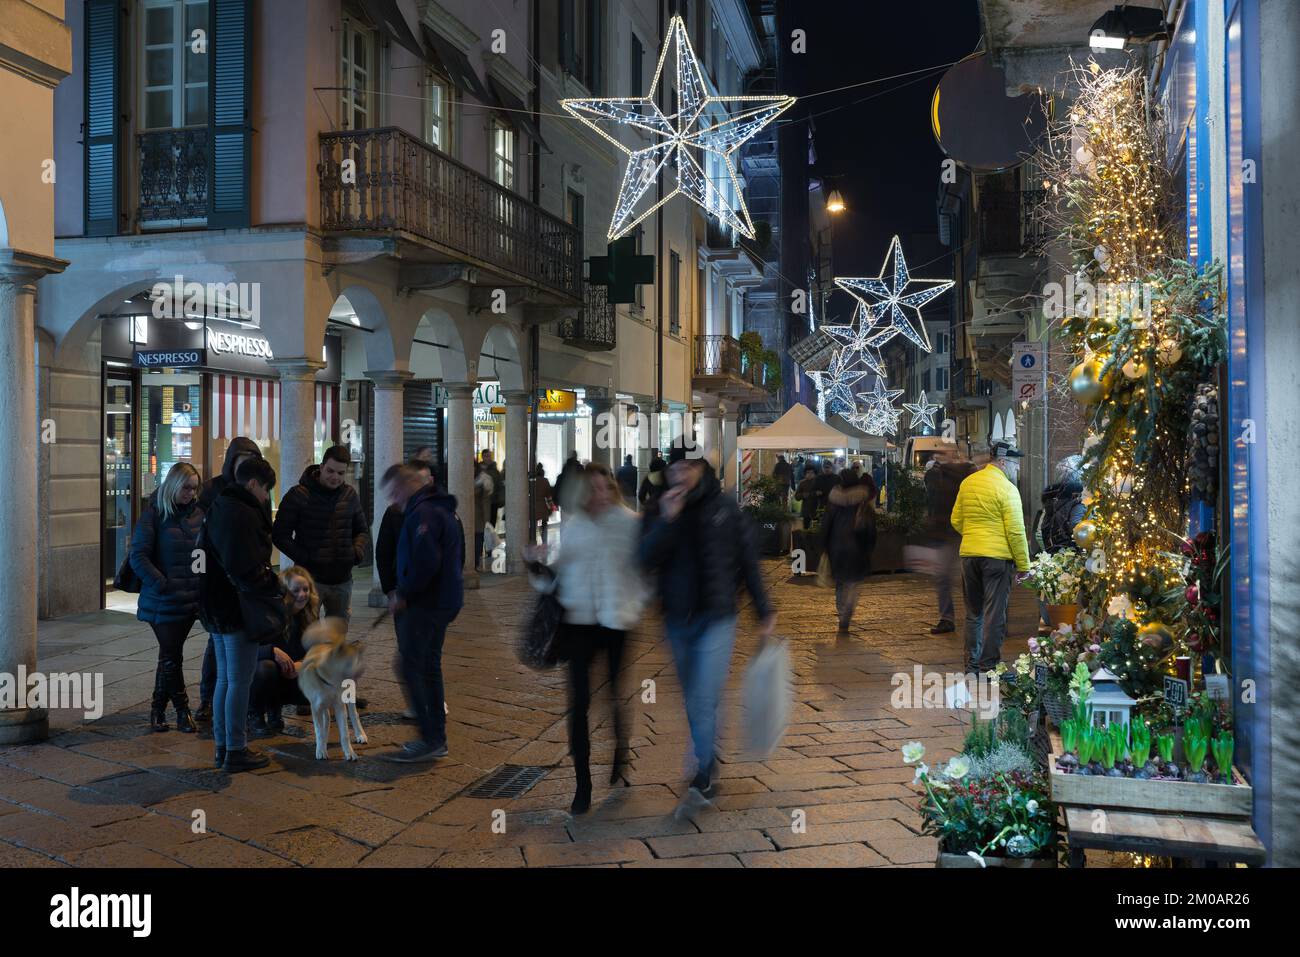 Vida nocturna de la ciudad durante las vacaciones de Navidad. Calle con gente, luces y decoraciones navideñas. Corso Matteotti en la ciudad de Varese Foto de stock